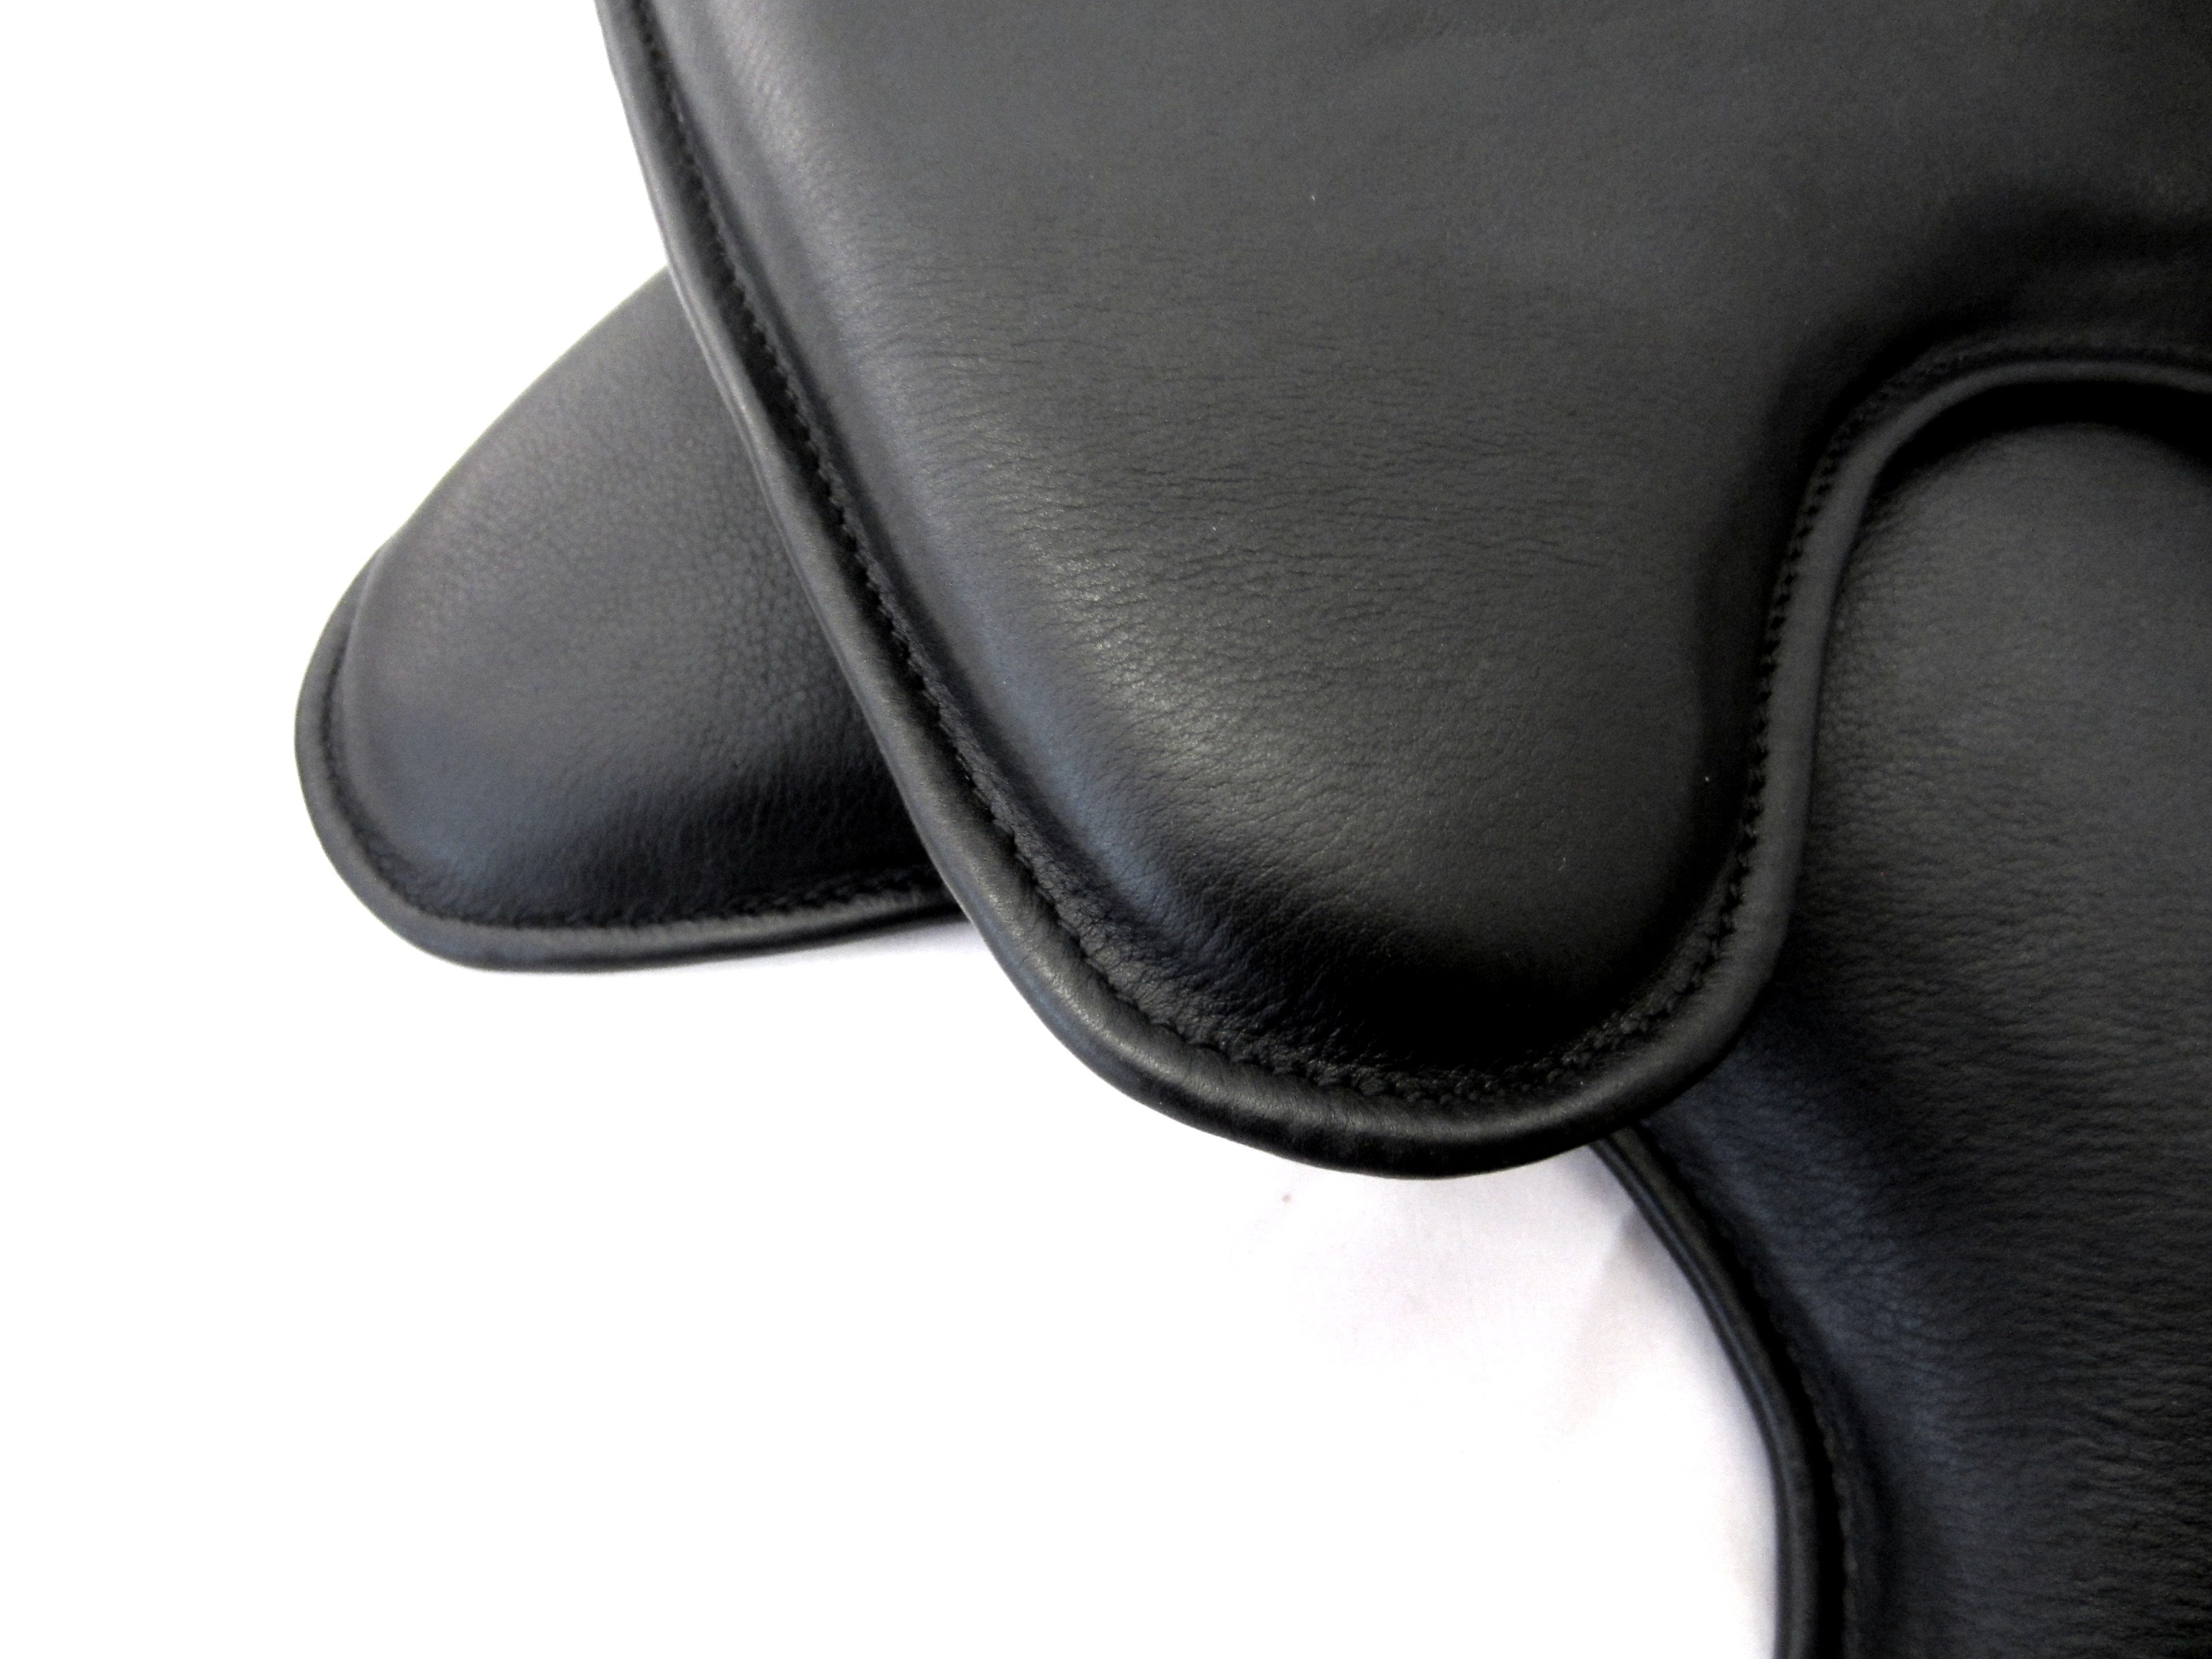 Coussin Velcro en forme de coin de 3-4-5 cm en forme de dressage; Coussin de selle/panneaux Velcro